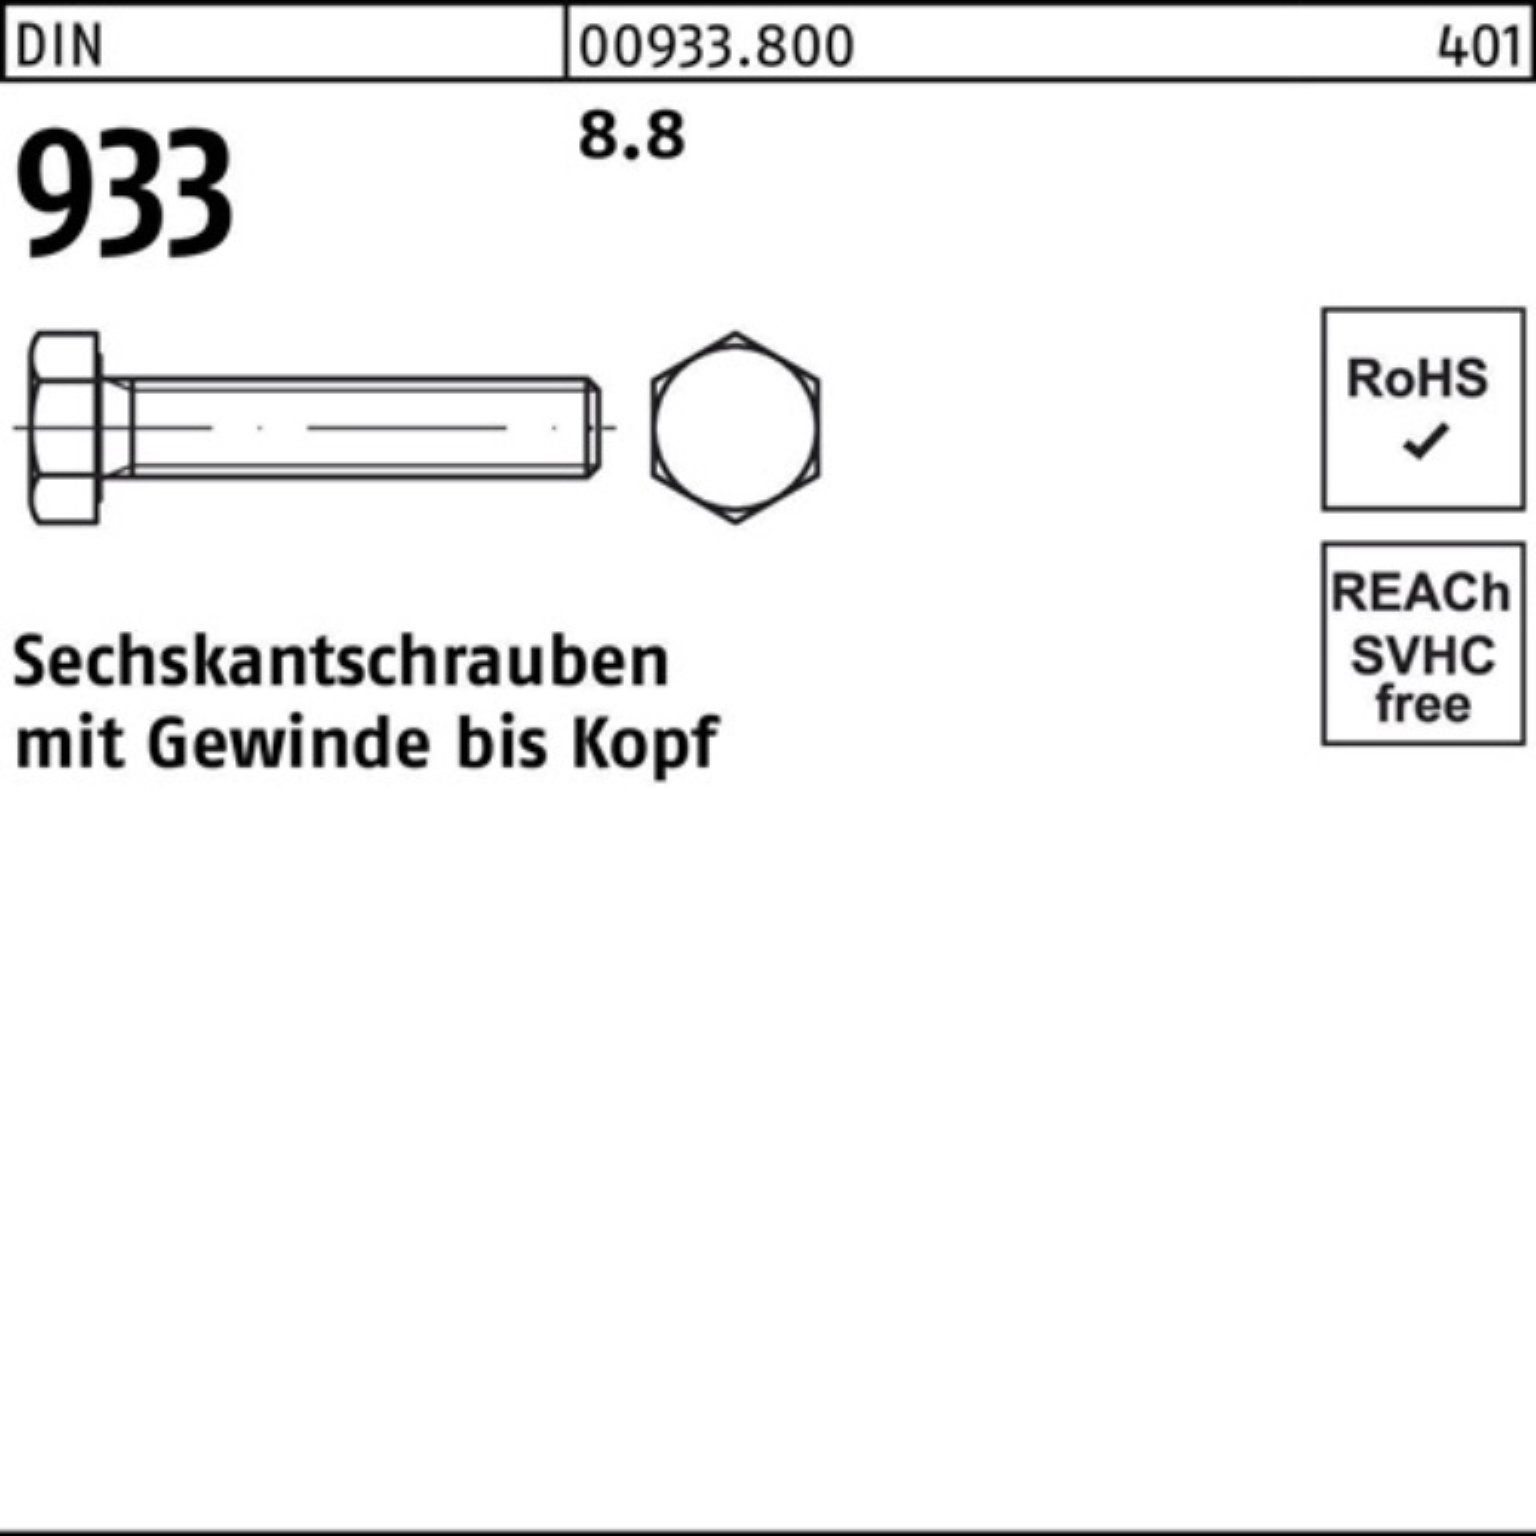 VG DIN DIN 50 Reyher 100er 130 Sechskantschraube Stück Sechskantschraube Pack 8.8 M14x 933 933